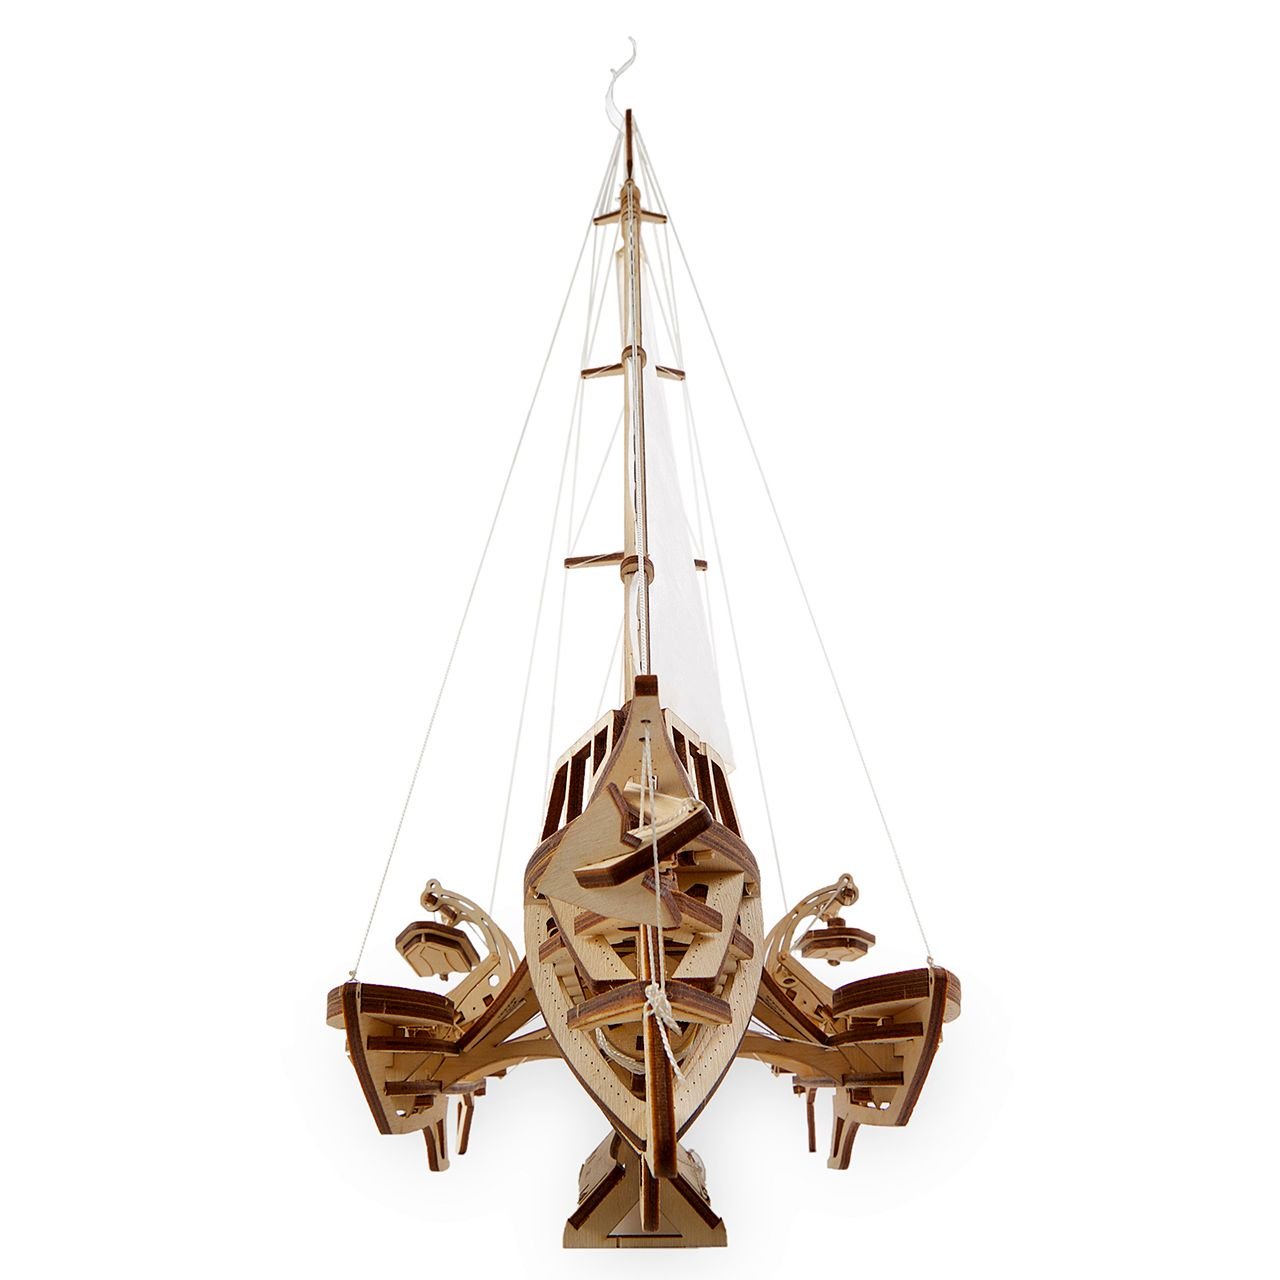 Maquette en bois du voilier trimaran Mérihobus, tableau arrière